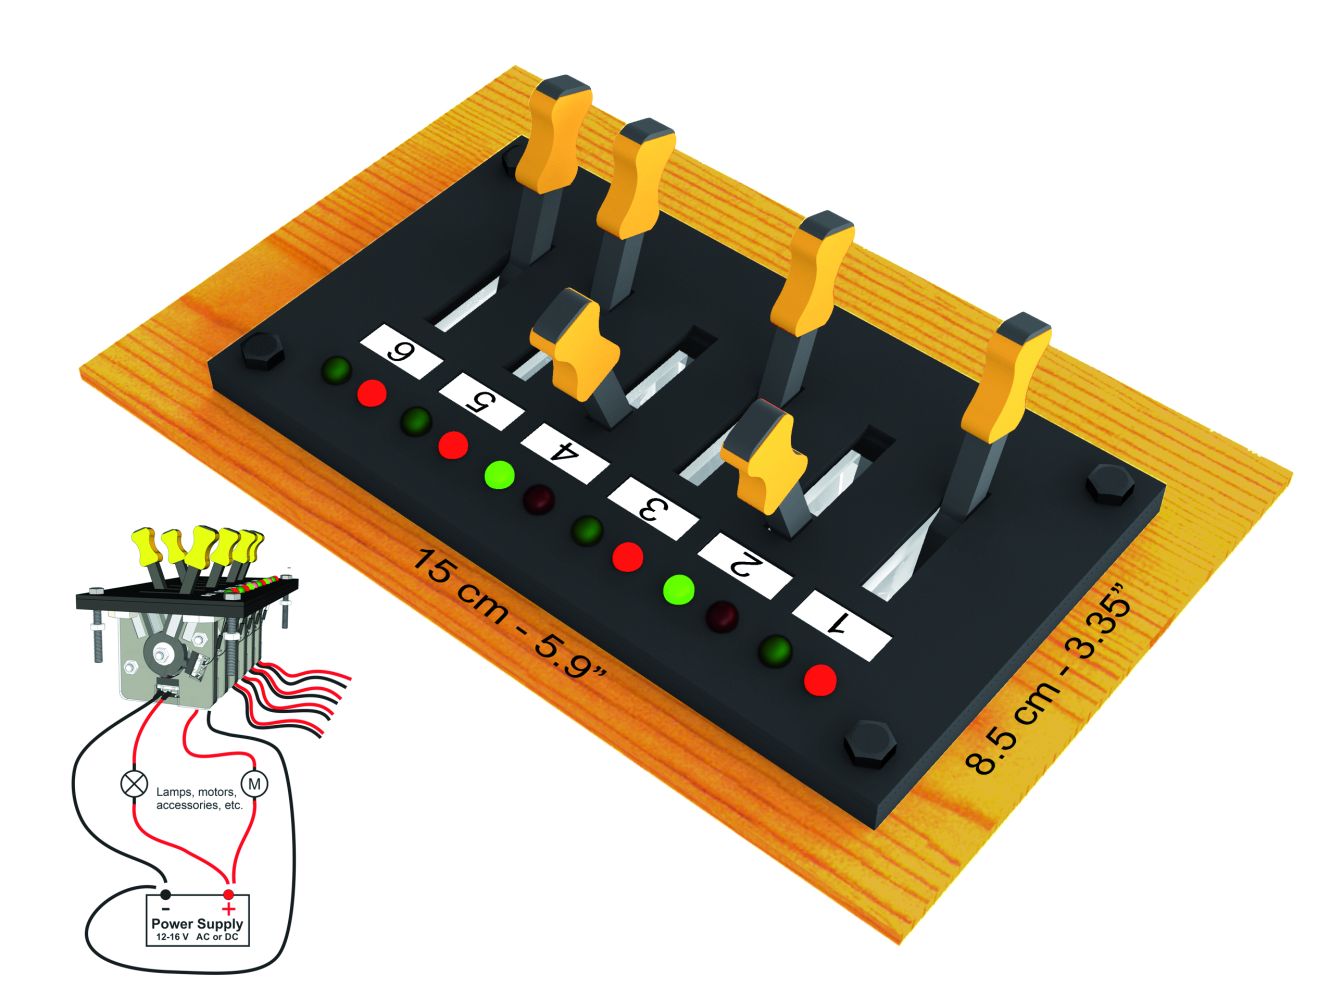 Proses PSWB-102 - Schalttafel für Beleuchtung,Drehscheibe u.a.  mit 6 Umleghebeln und je 6 Kontroll-LEDs /grün/rot